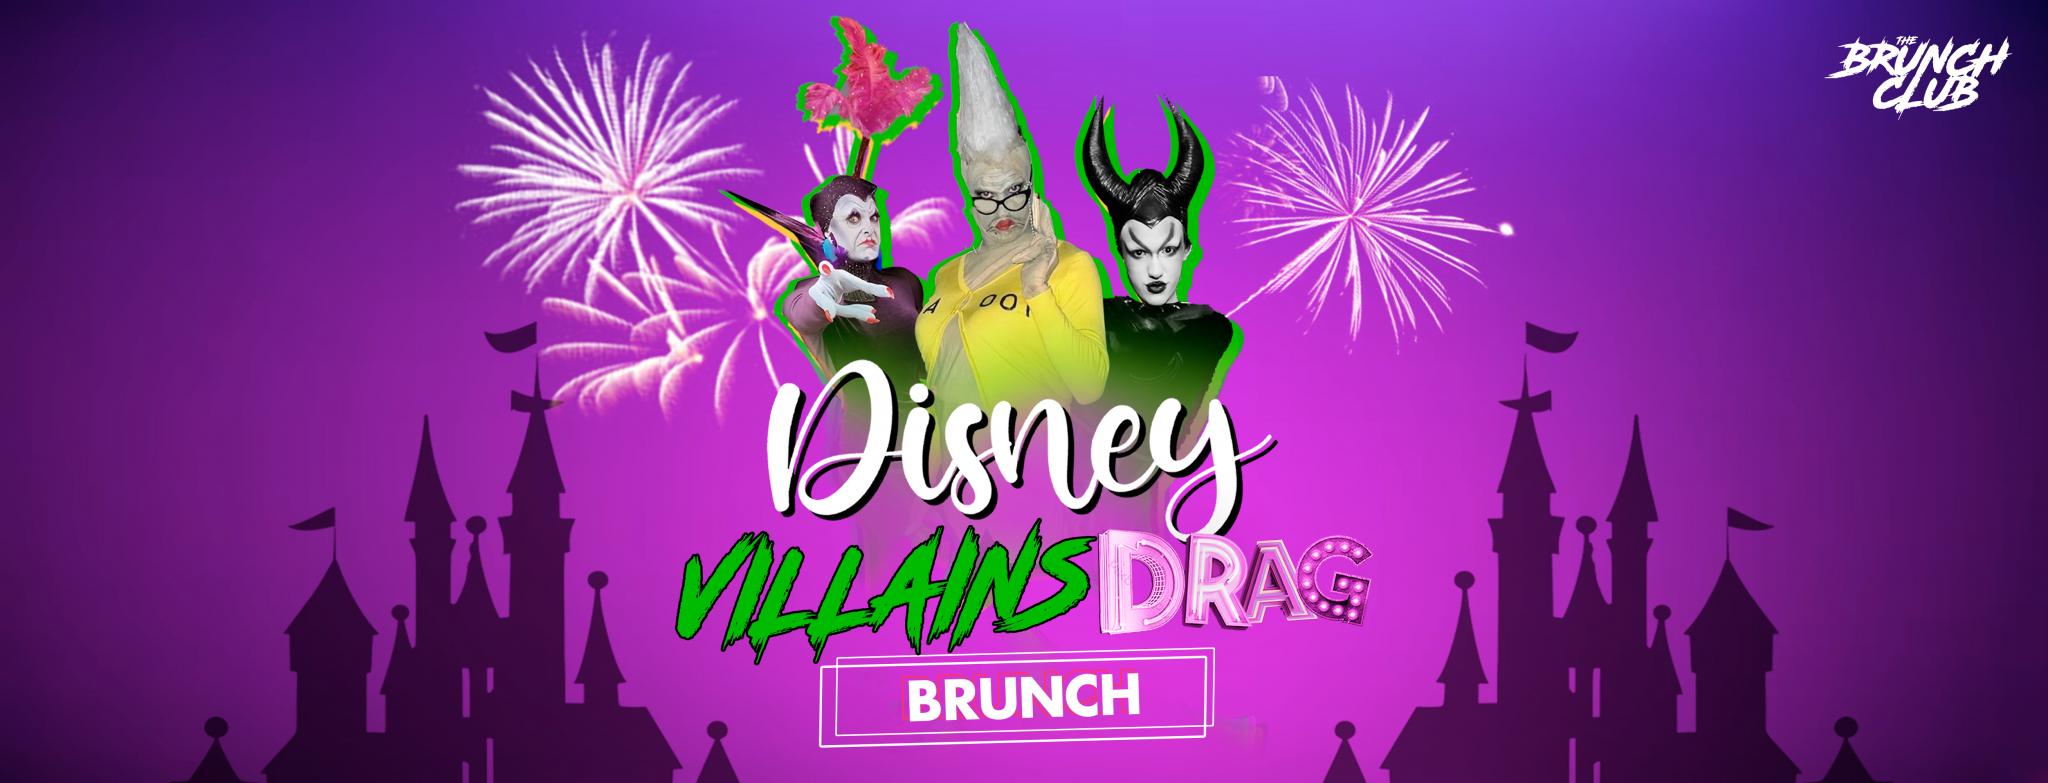 Disney Villains Drag Boozy Brunch - Glasgow